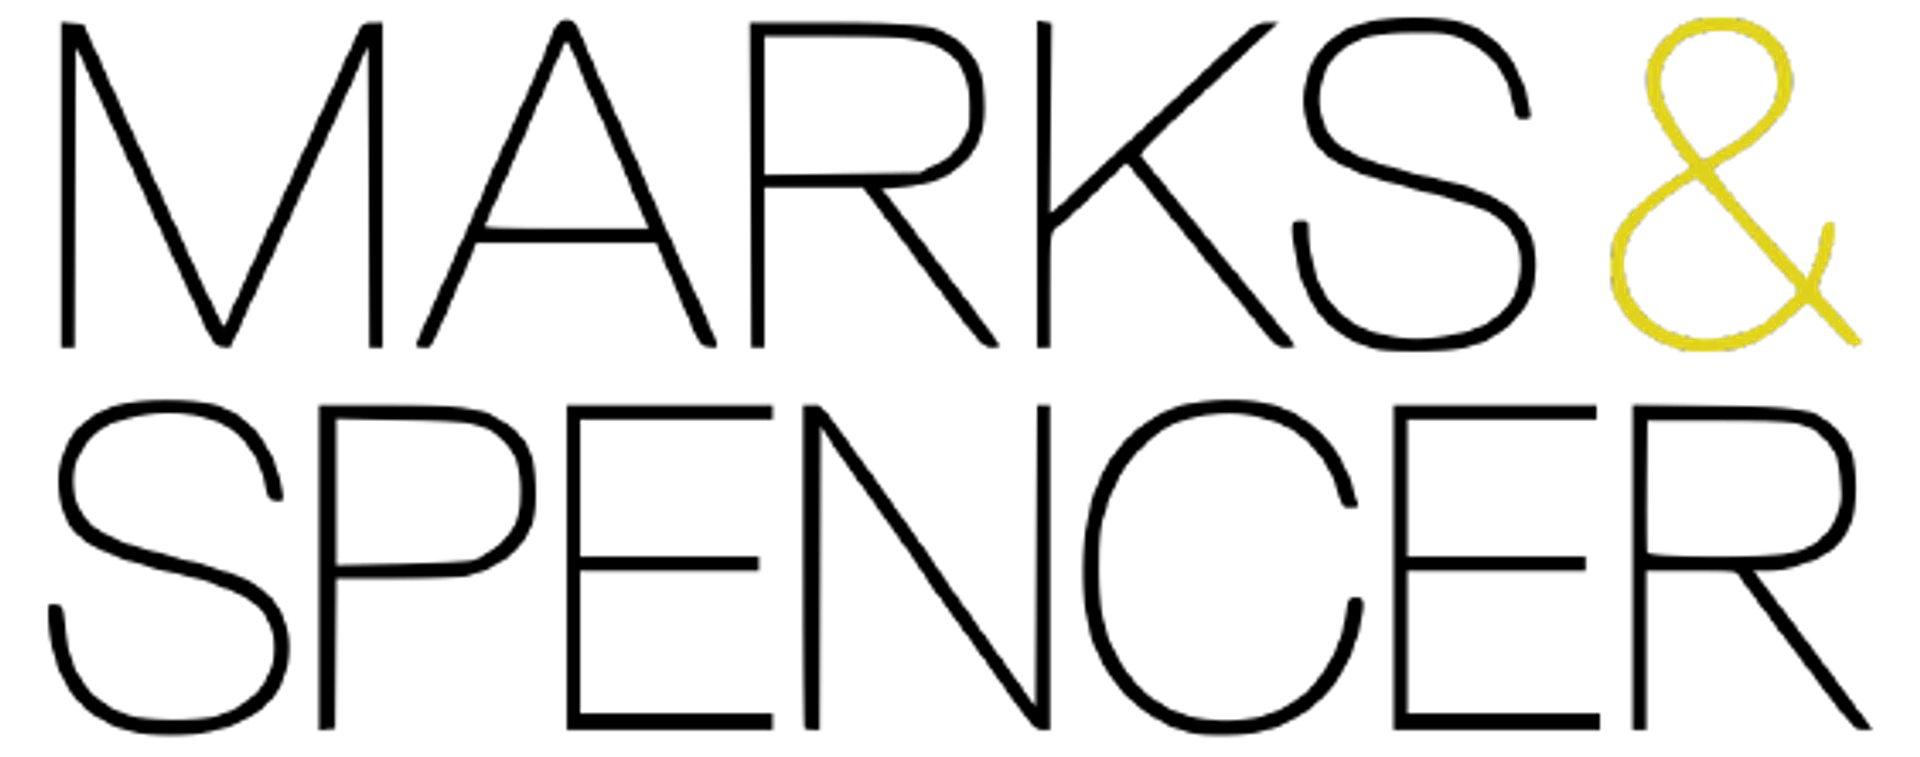 MARKS & SPENCER logo